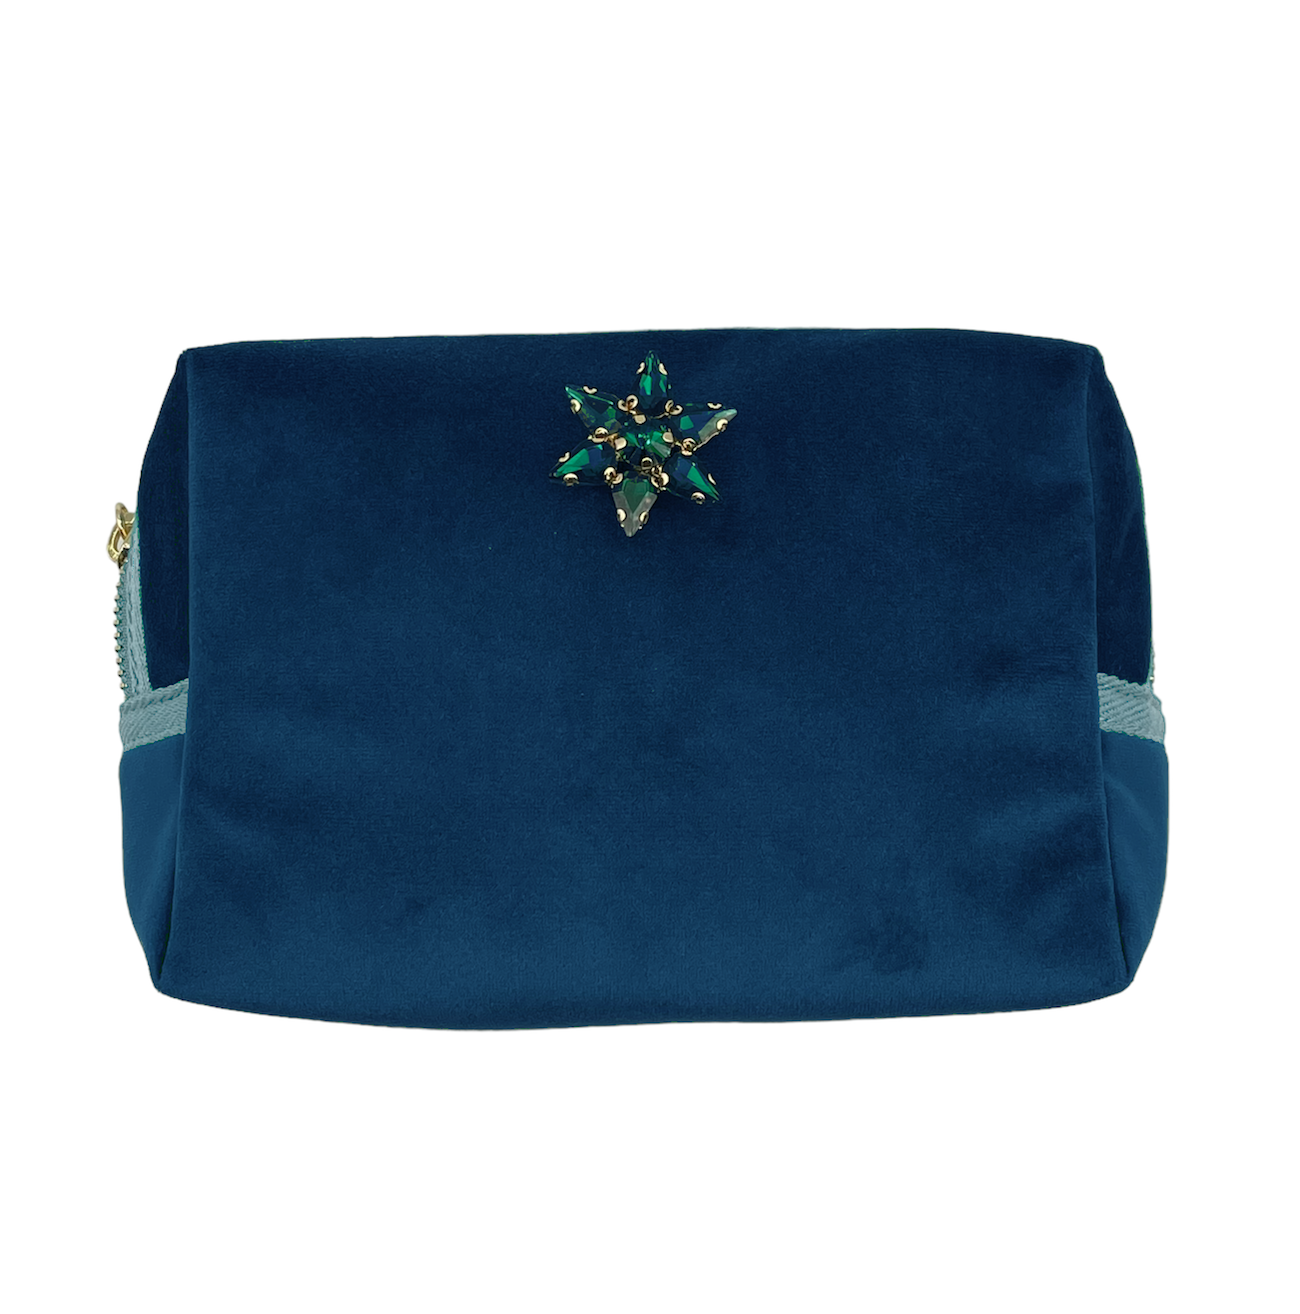 Blue make-up bag & sparkle star pin - recycled velvet